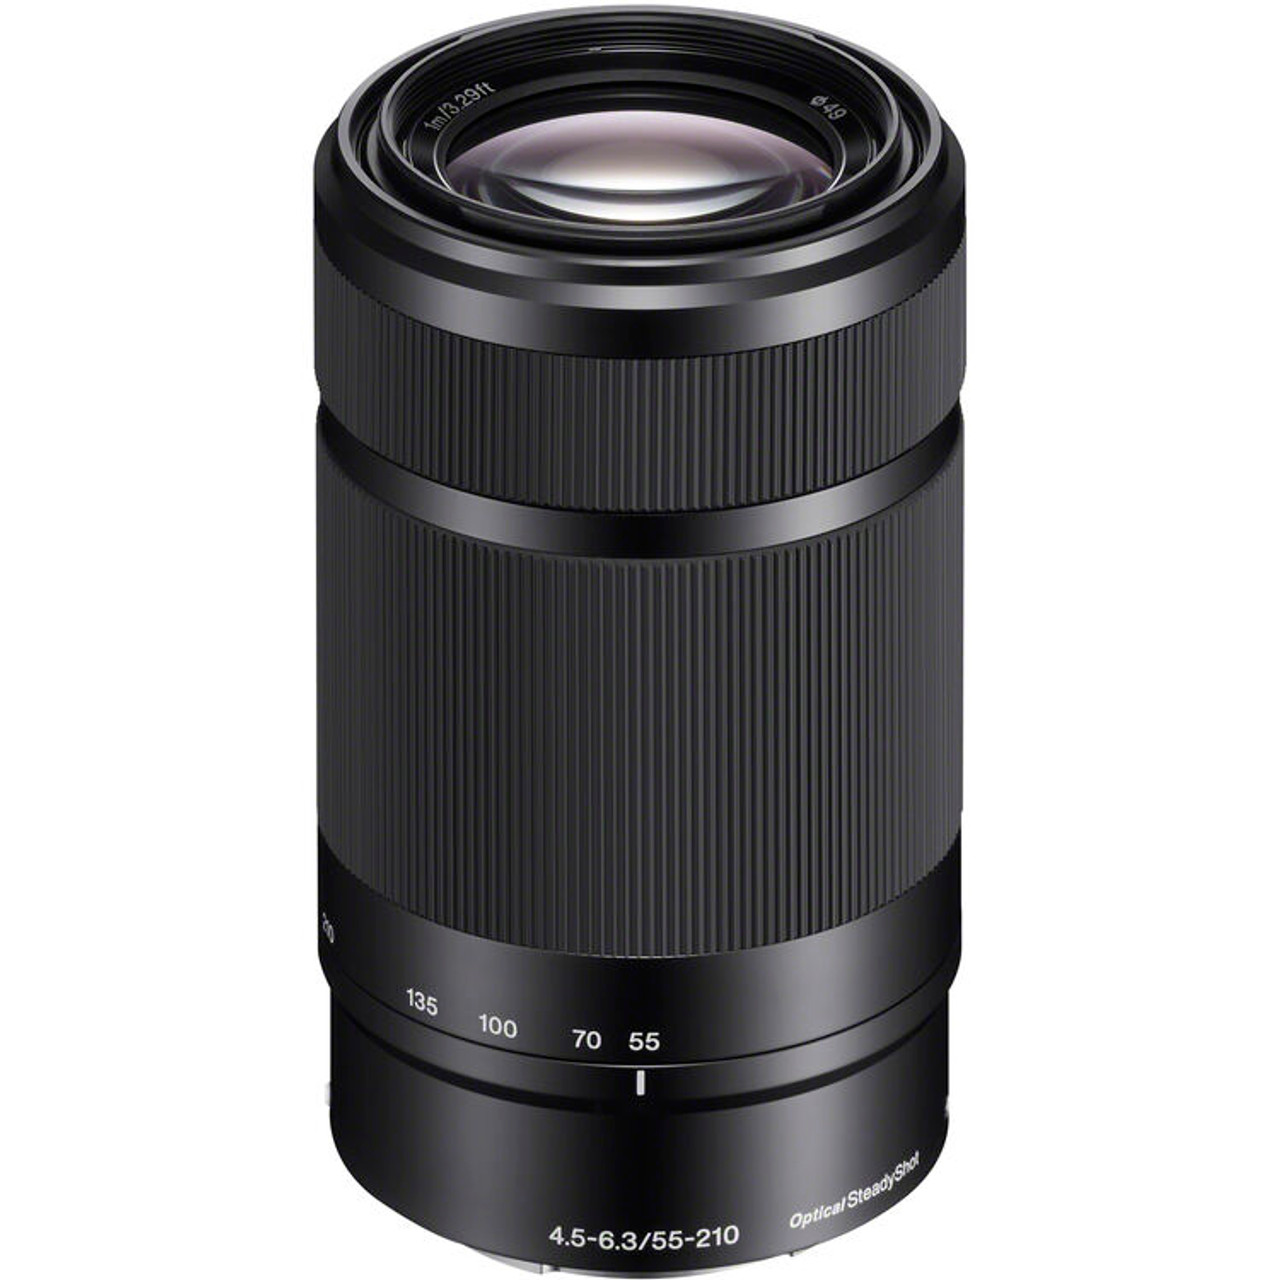 Streven Seminarie huwelijk Sony 55-210mm f/4.5-6.3 OSS E-Mount Camera Lens, Black